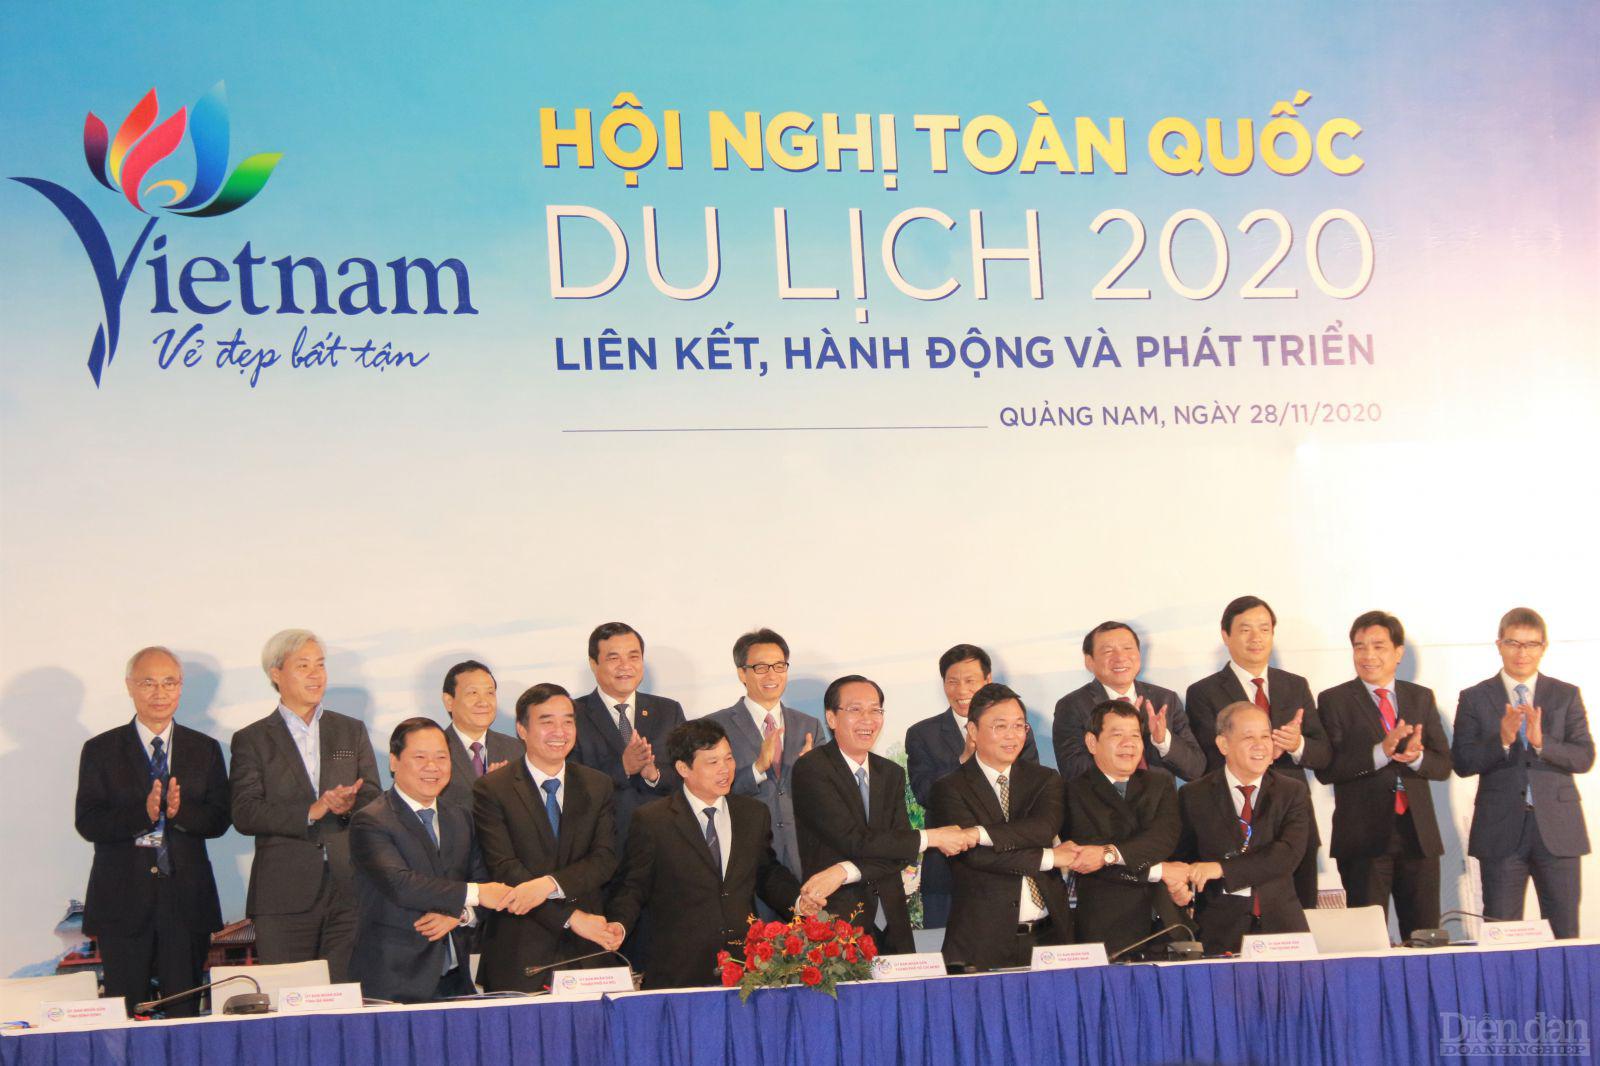 Lễ ký kết hợp tác liên kết, phát triển du lịch giữa Hà Nội, TP. Hồ Chí Minh và 05 tỉnh, thành thuộc Vùng kinh tế trọng điểm miền Trung.